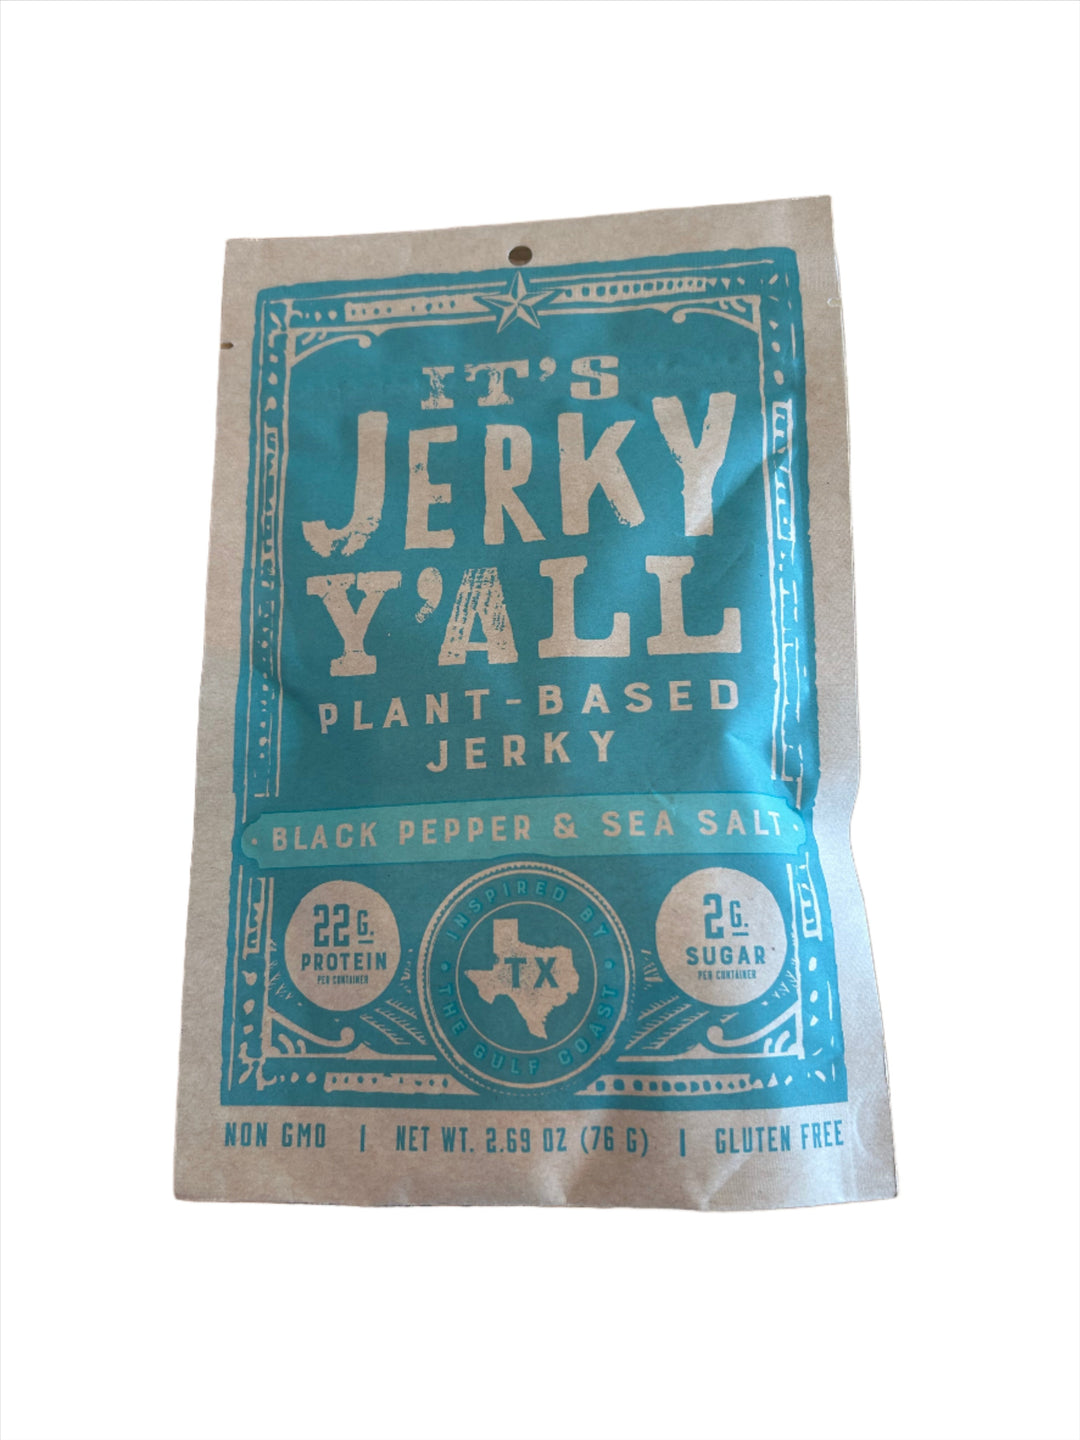 Black Pepper & Sea Salt Plant-Based Jerky